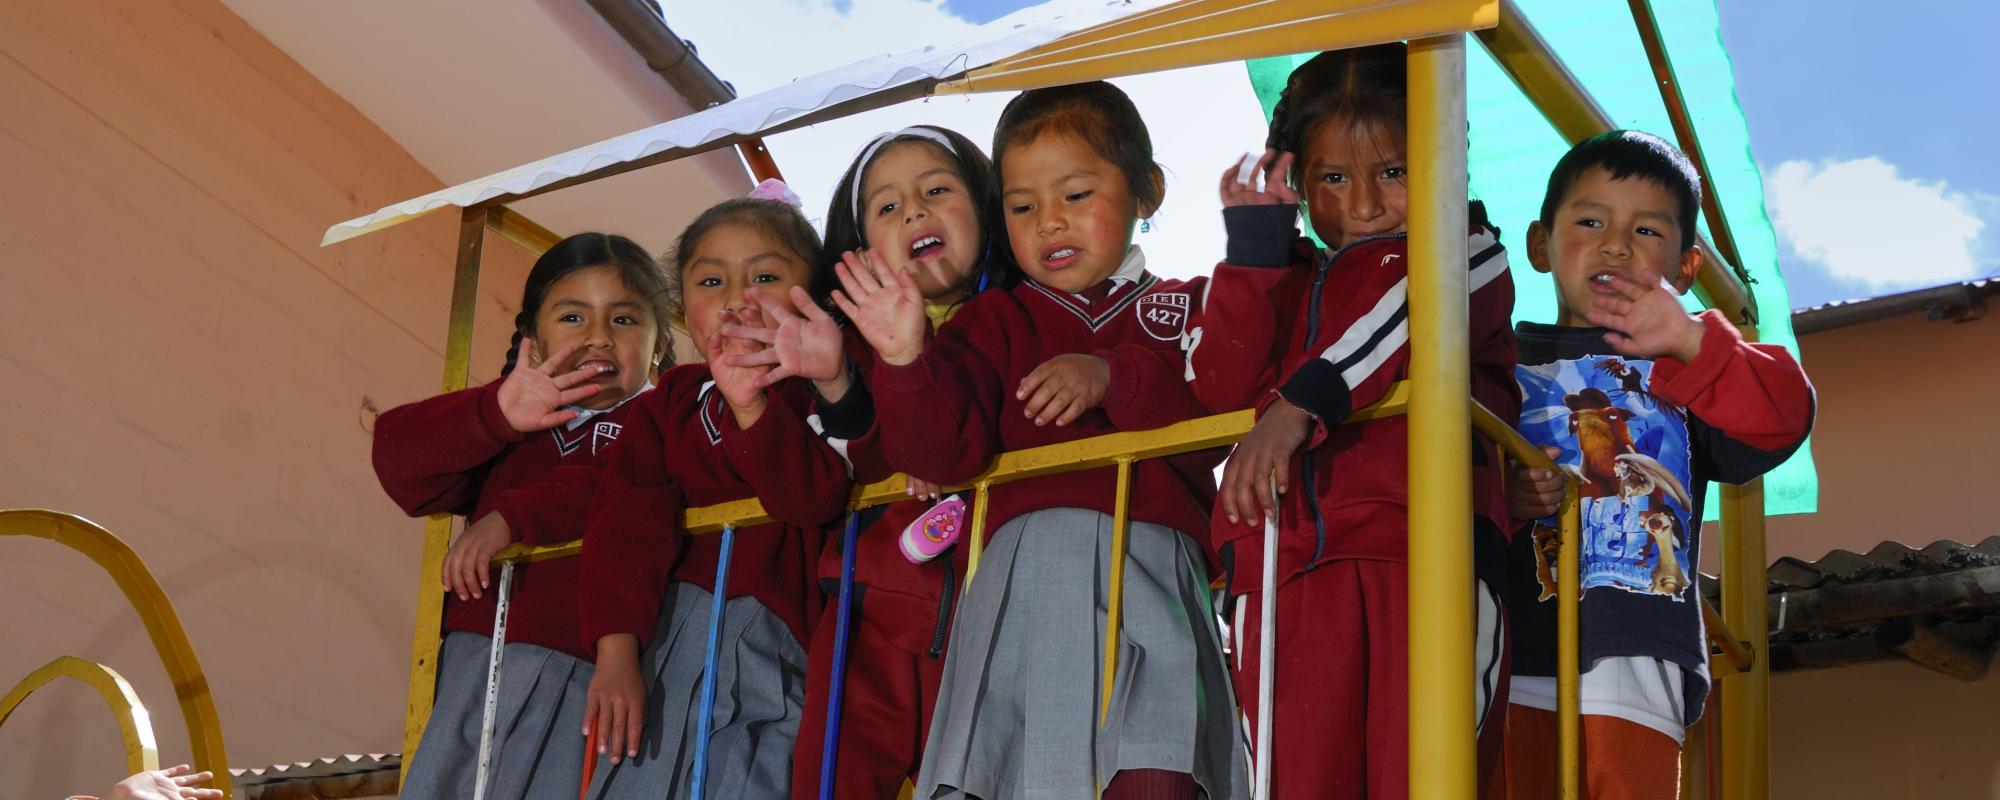 Peruvian children on playground at pre-school